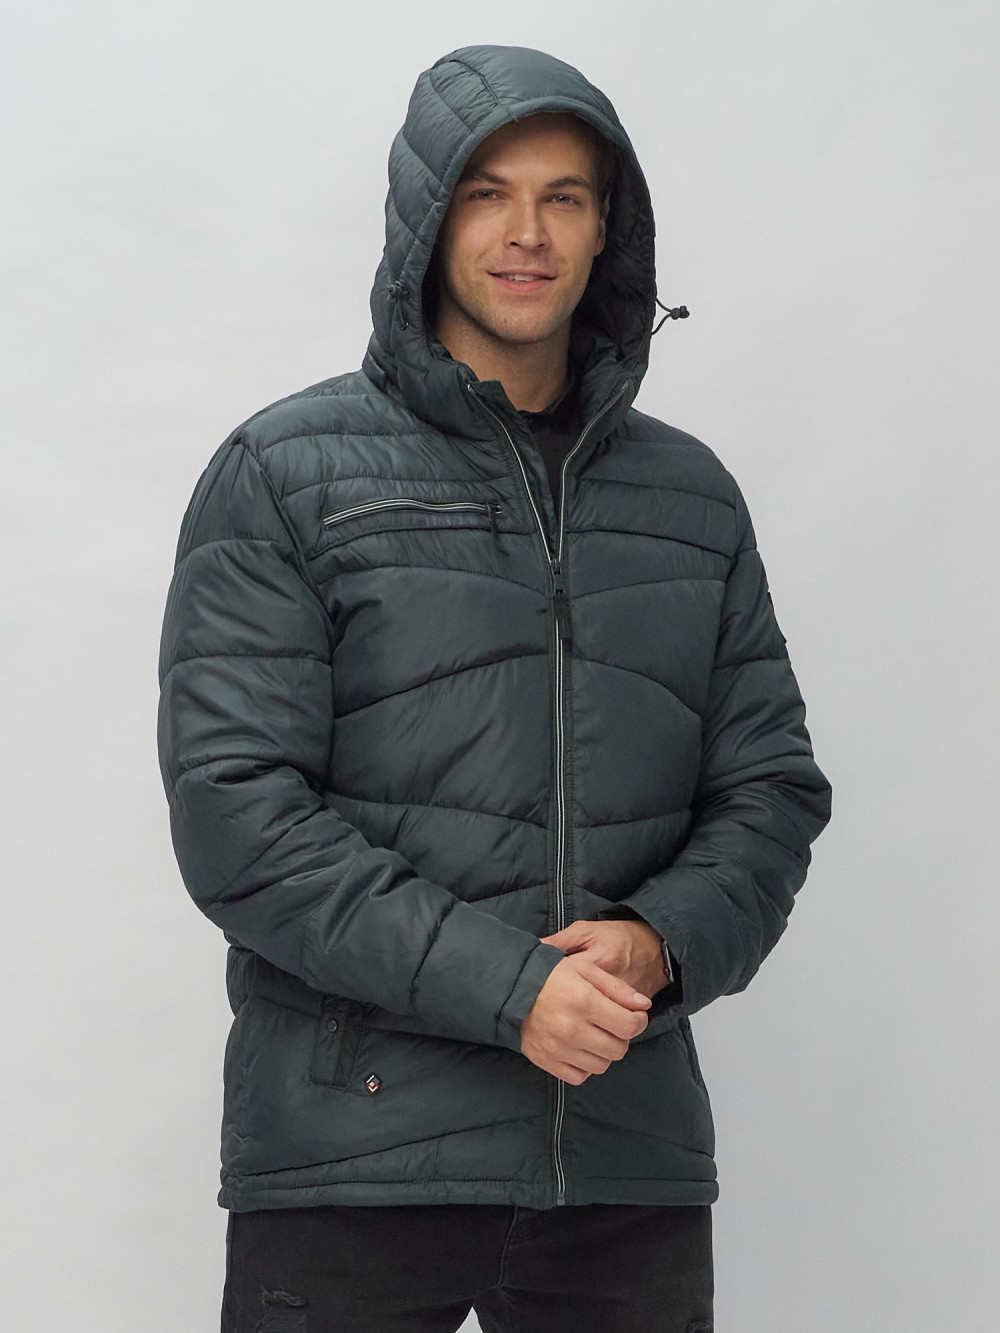 Купить куртку мужскую спортивную весеннюю оптом от производителя недорого в Москве 62188TC 1